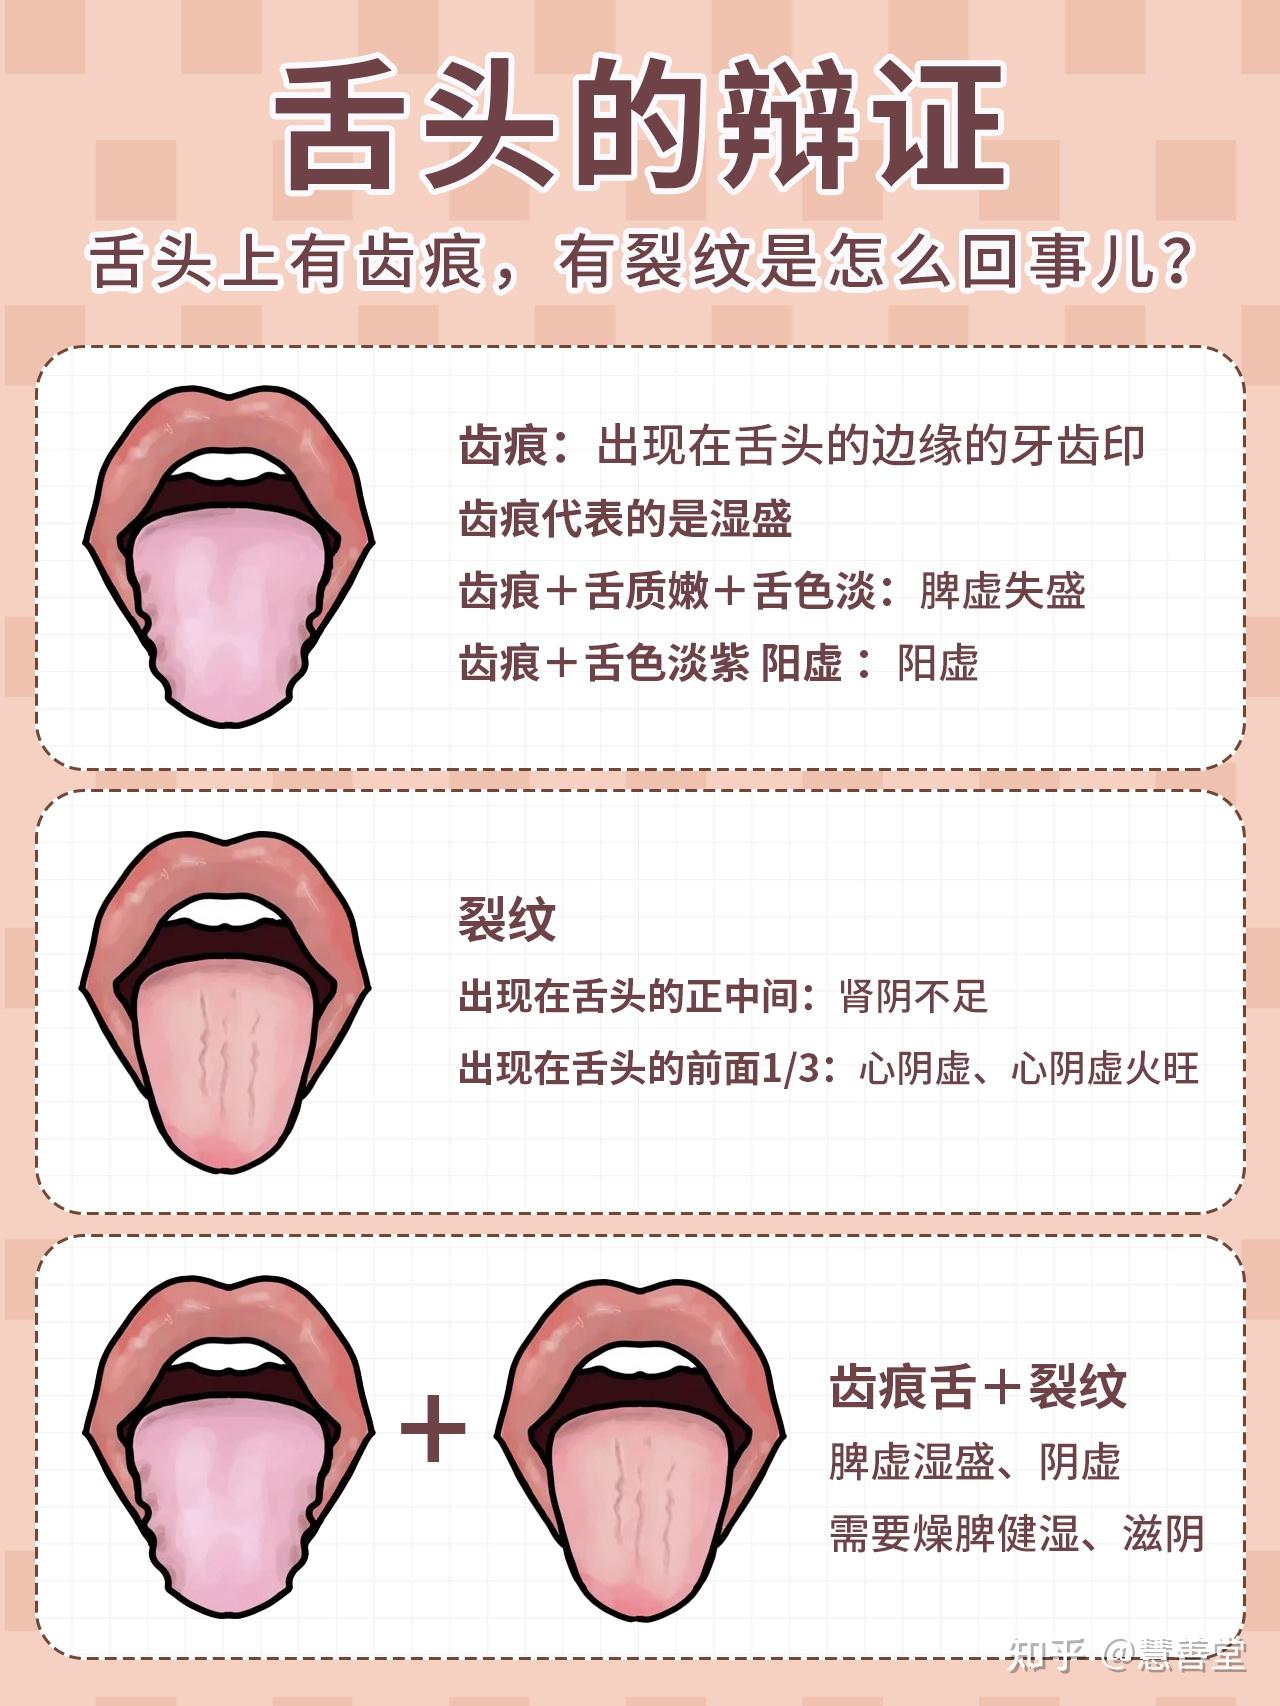 裂纹舌、齿痕舌、胖大舌分别代表了什么？ - 知乎